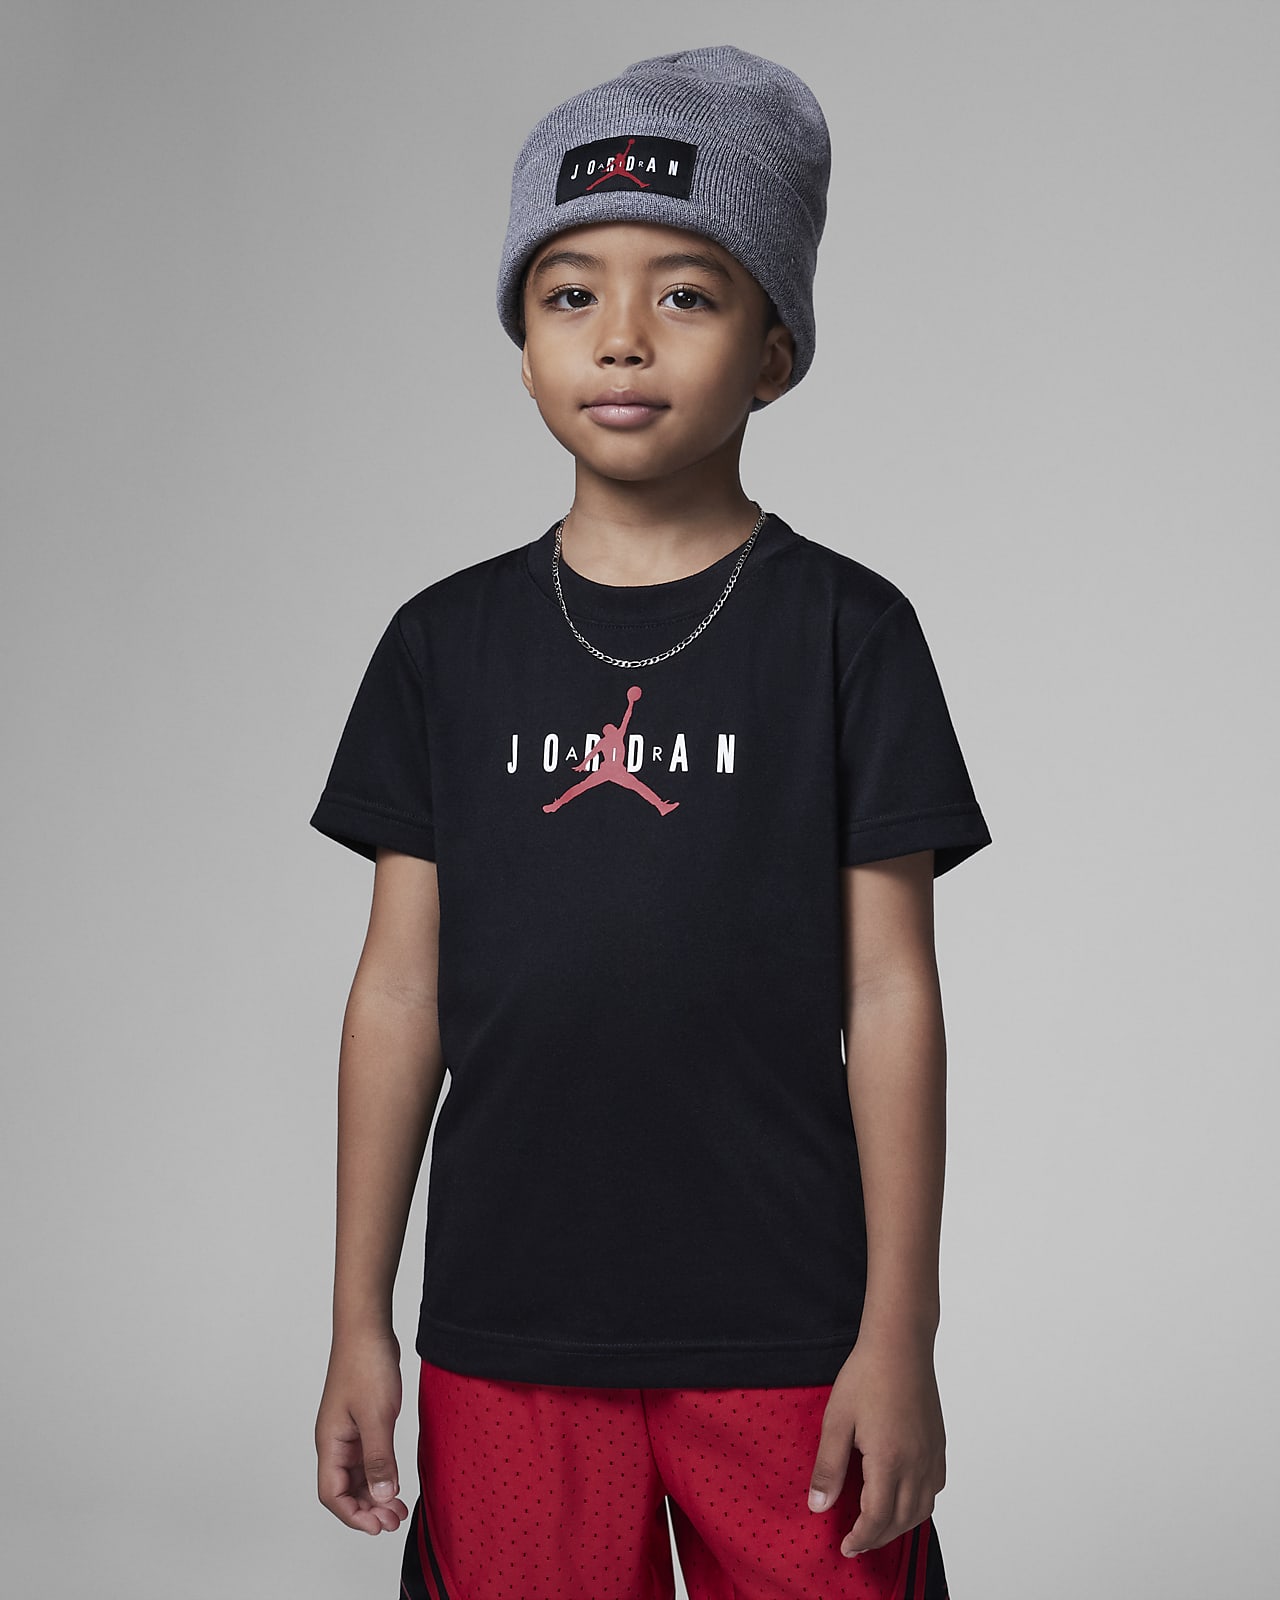 Duke i live chef Jordan Sustainable-T-shirt til mindre børn. Nike DK